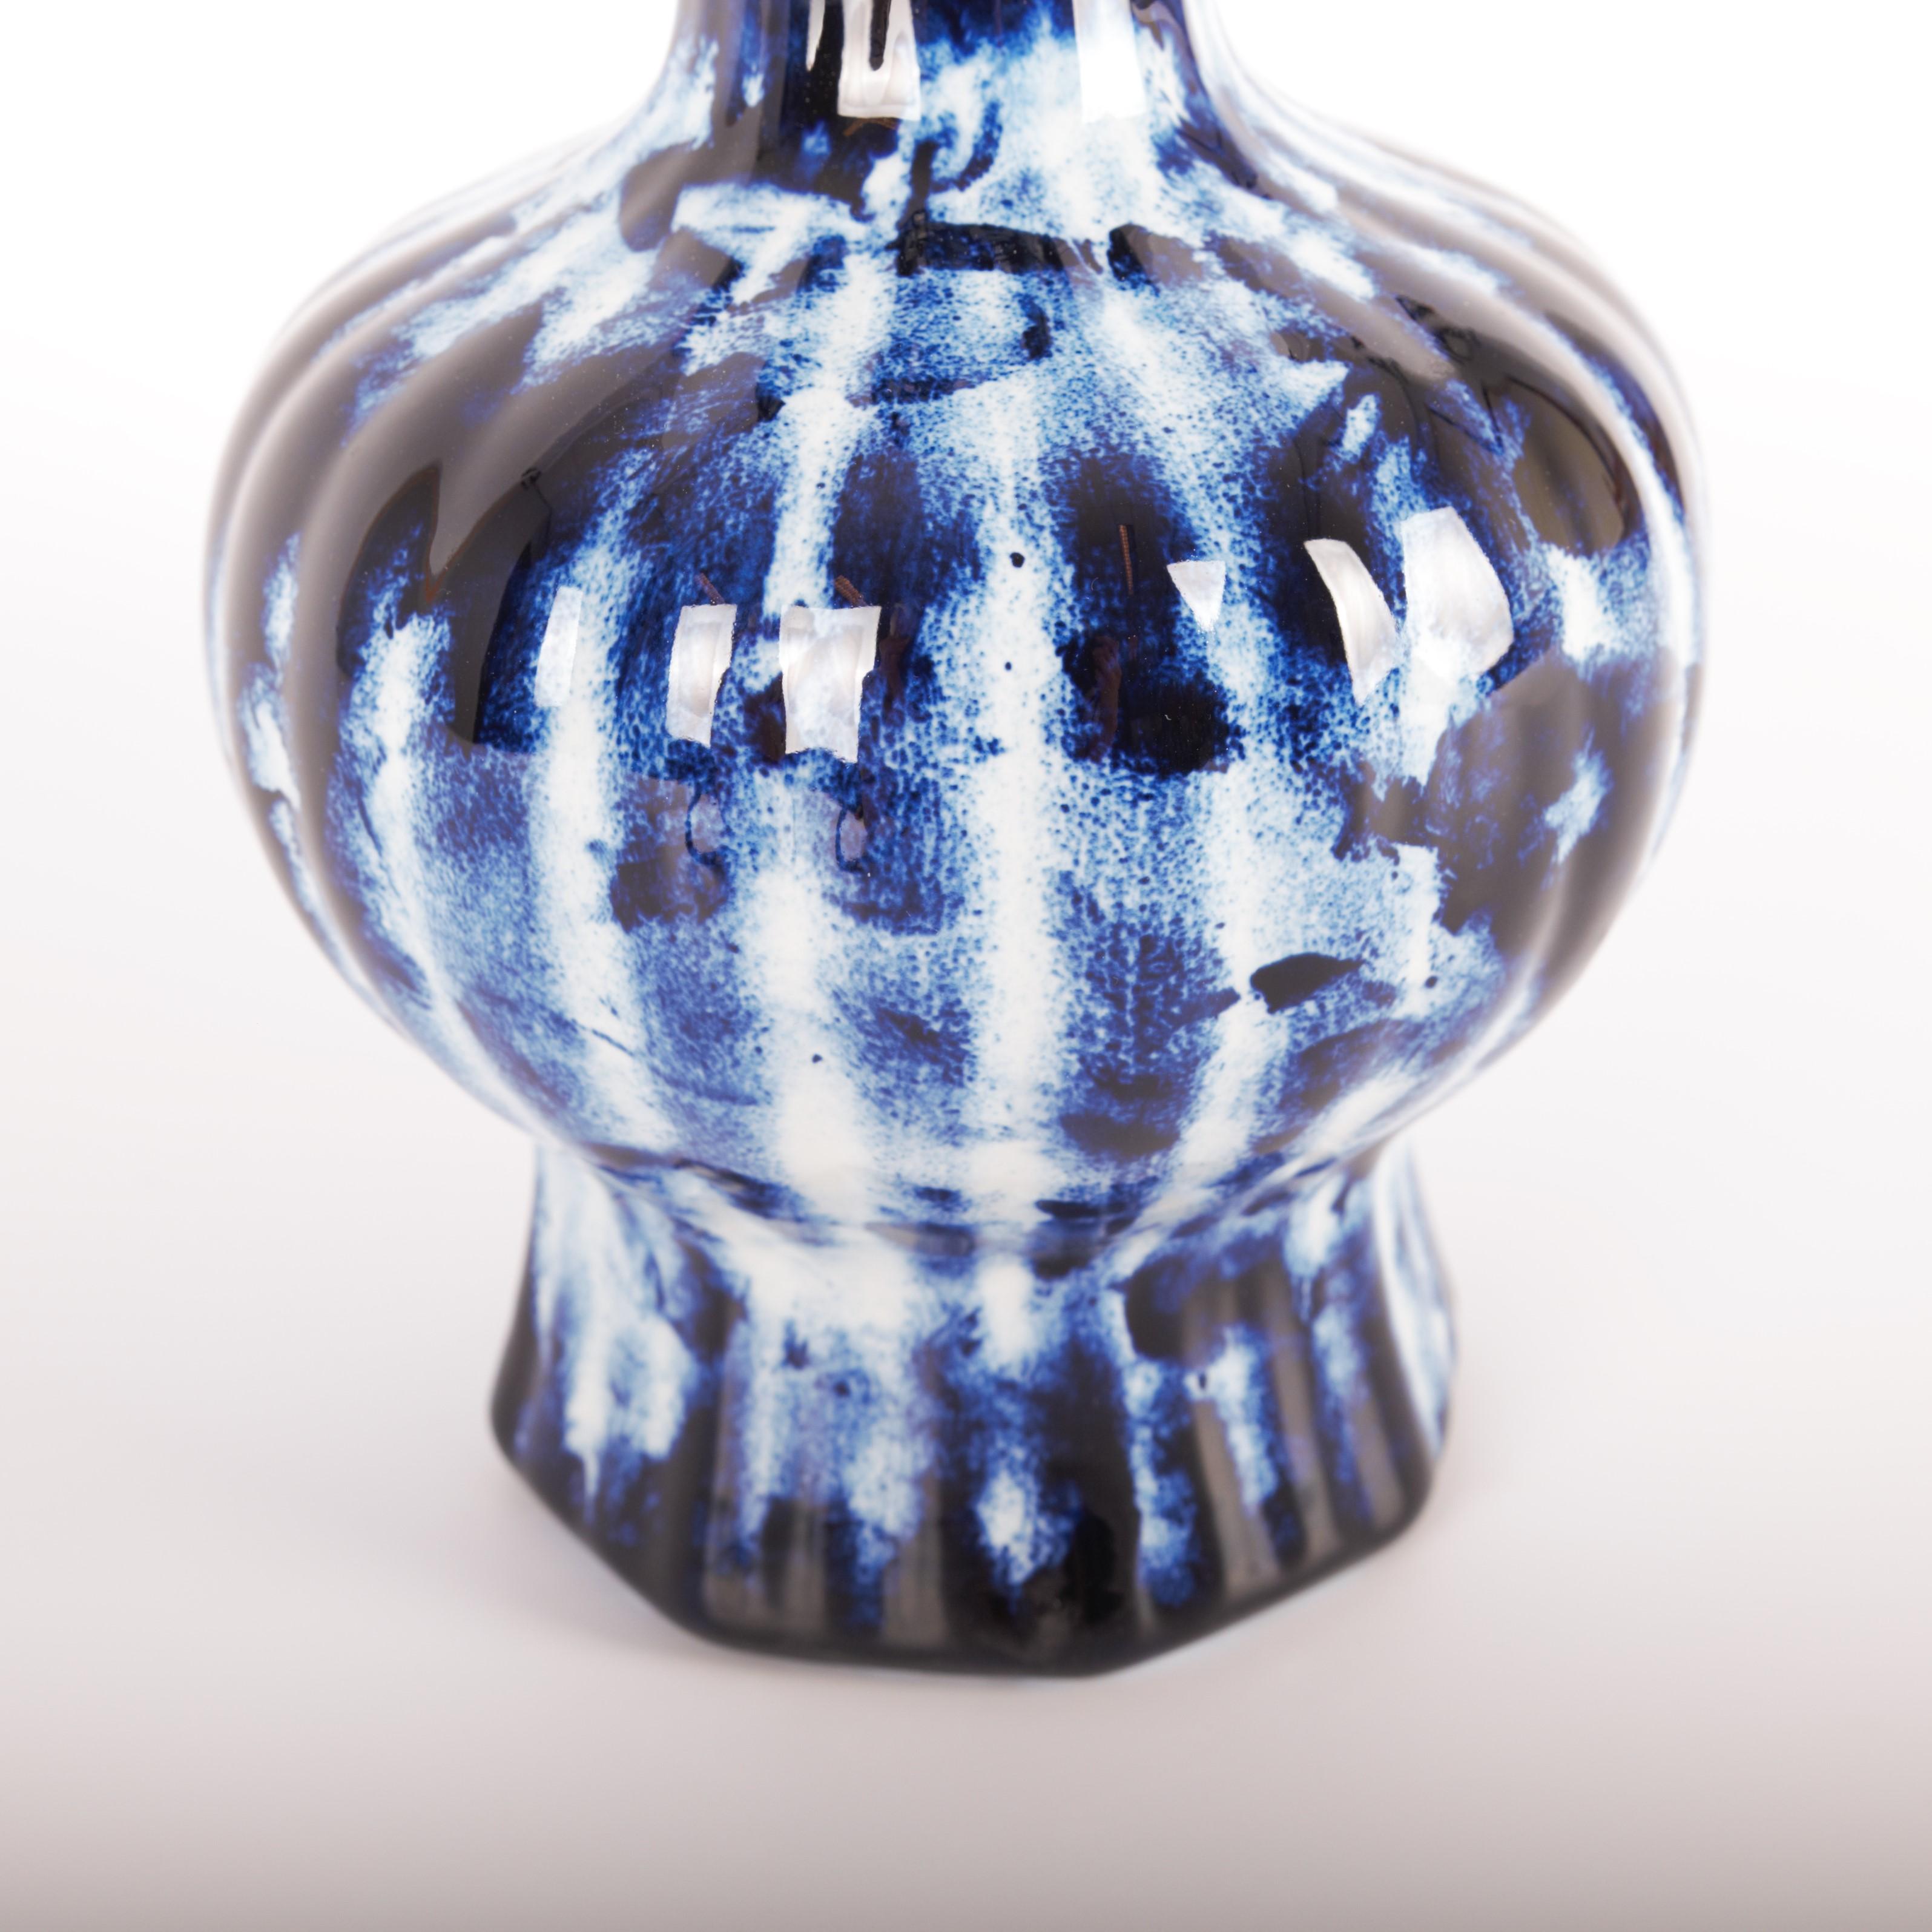 Ceramic Delft Blue Longneck Vase #2, by Marcel Wanders, Hand Painted, 2006, Unique For Sale